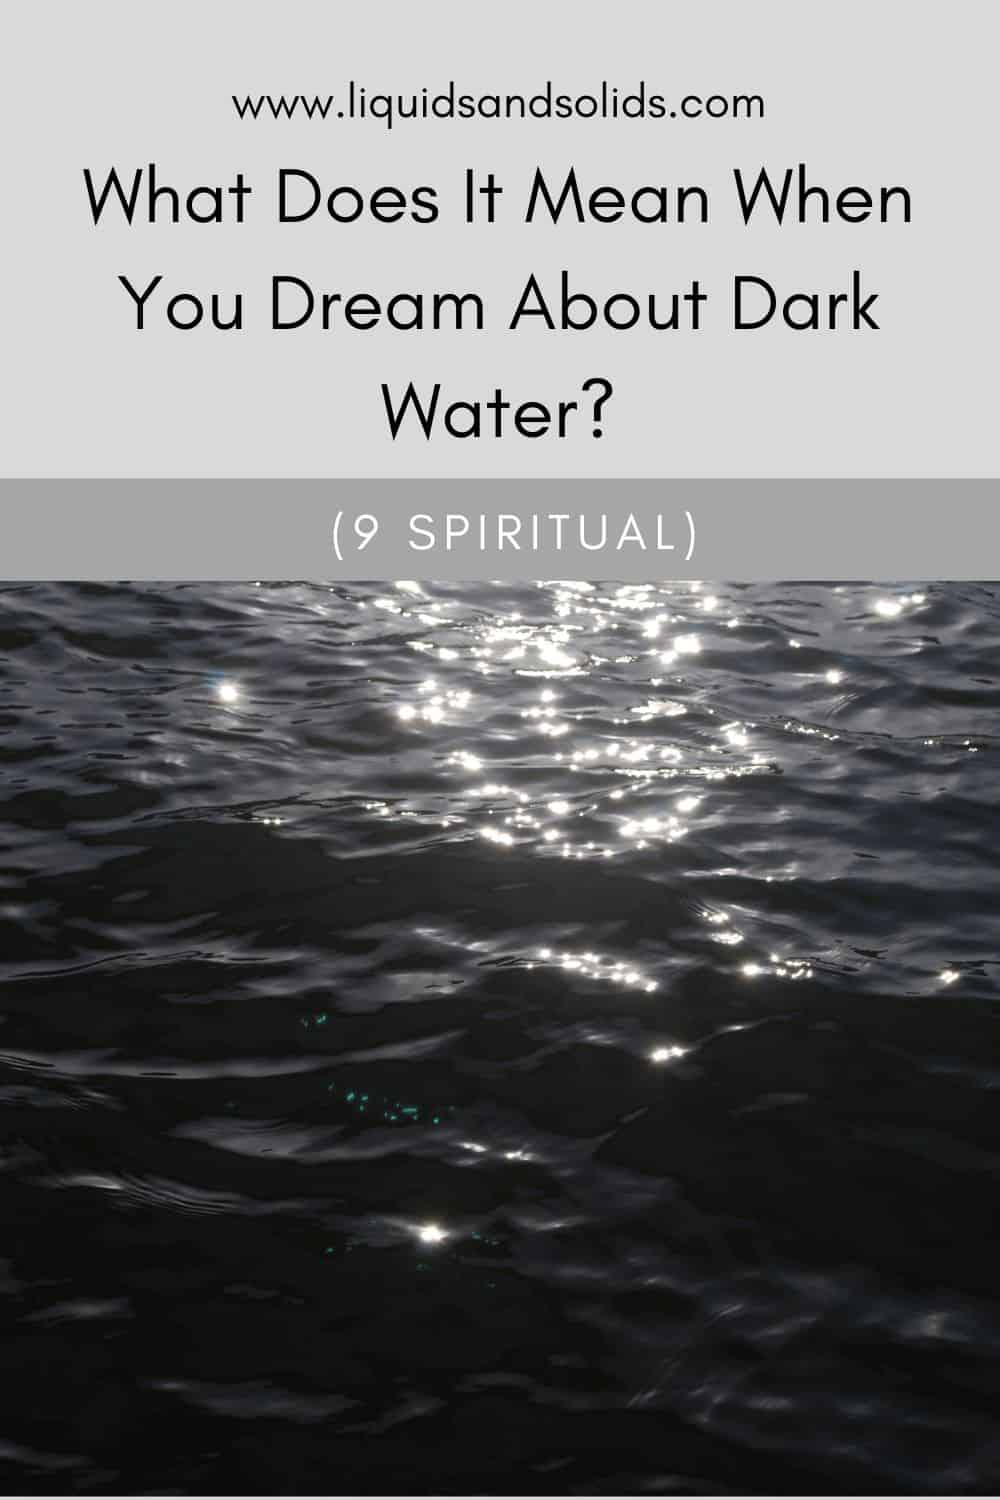  Soñar coa auga escura? (9 significados espirituais)